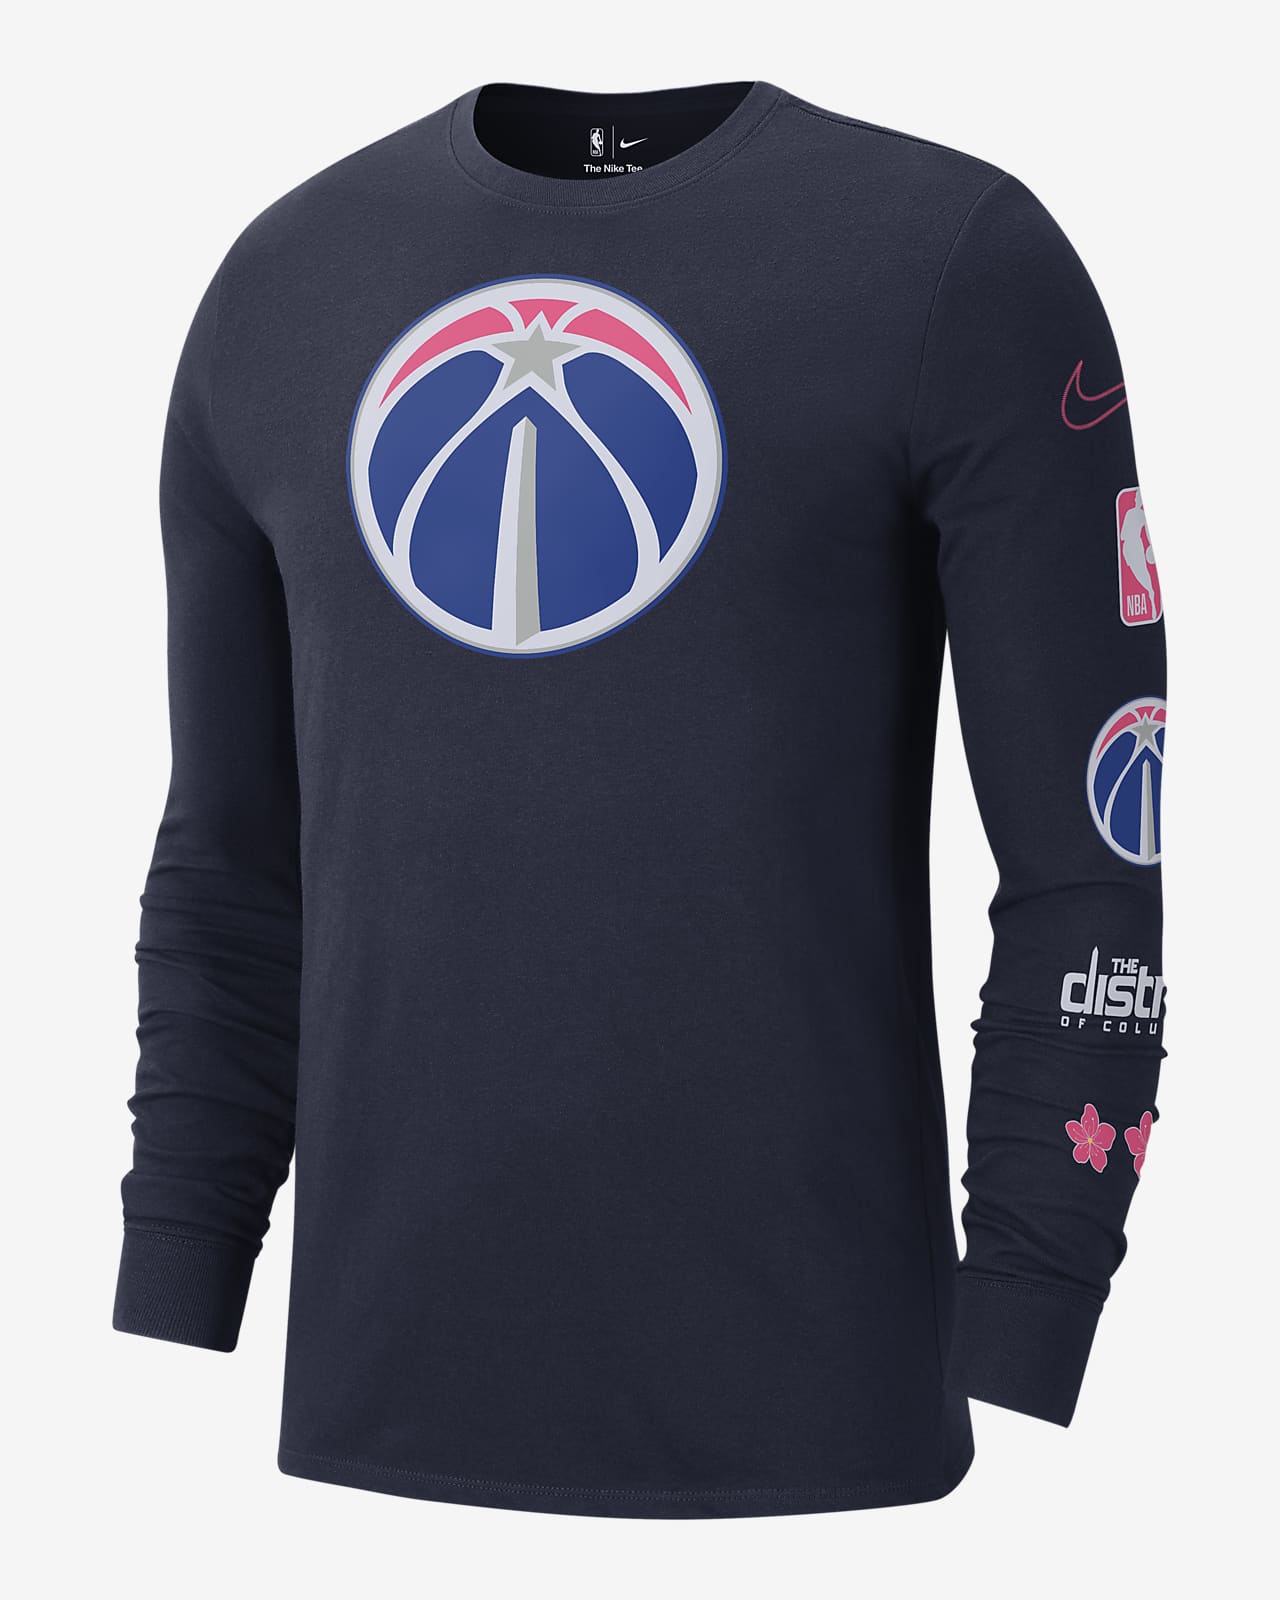 Washington Wizards Nike NBA Authentics DriFit Polo Women's Navy New XL